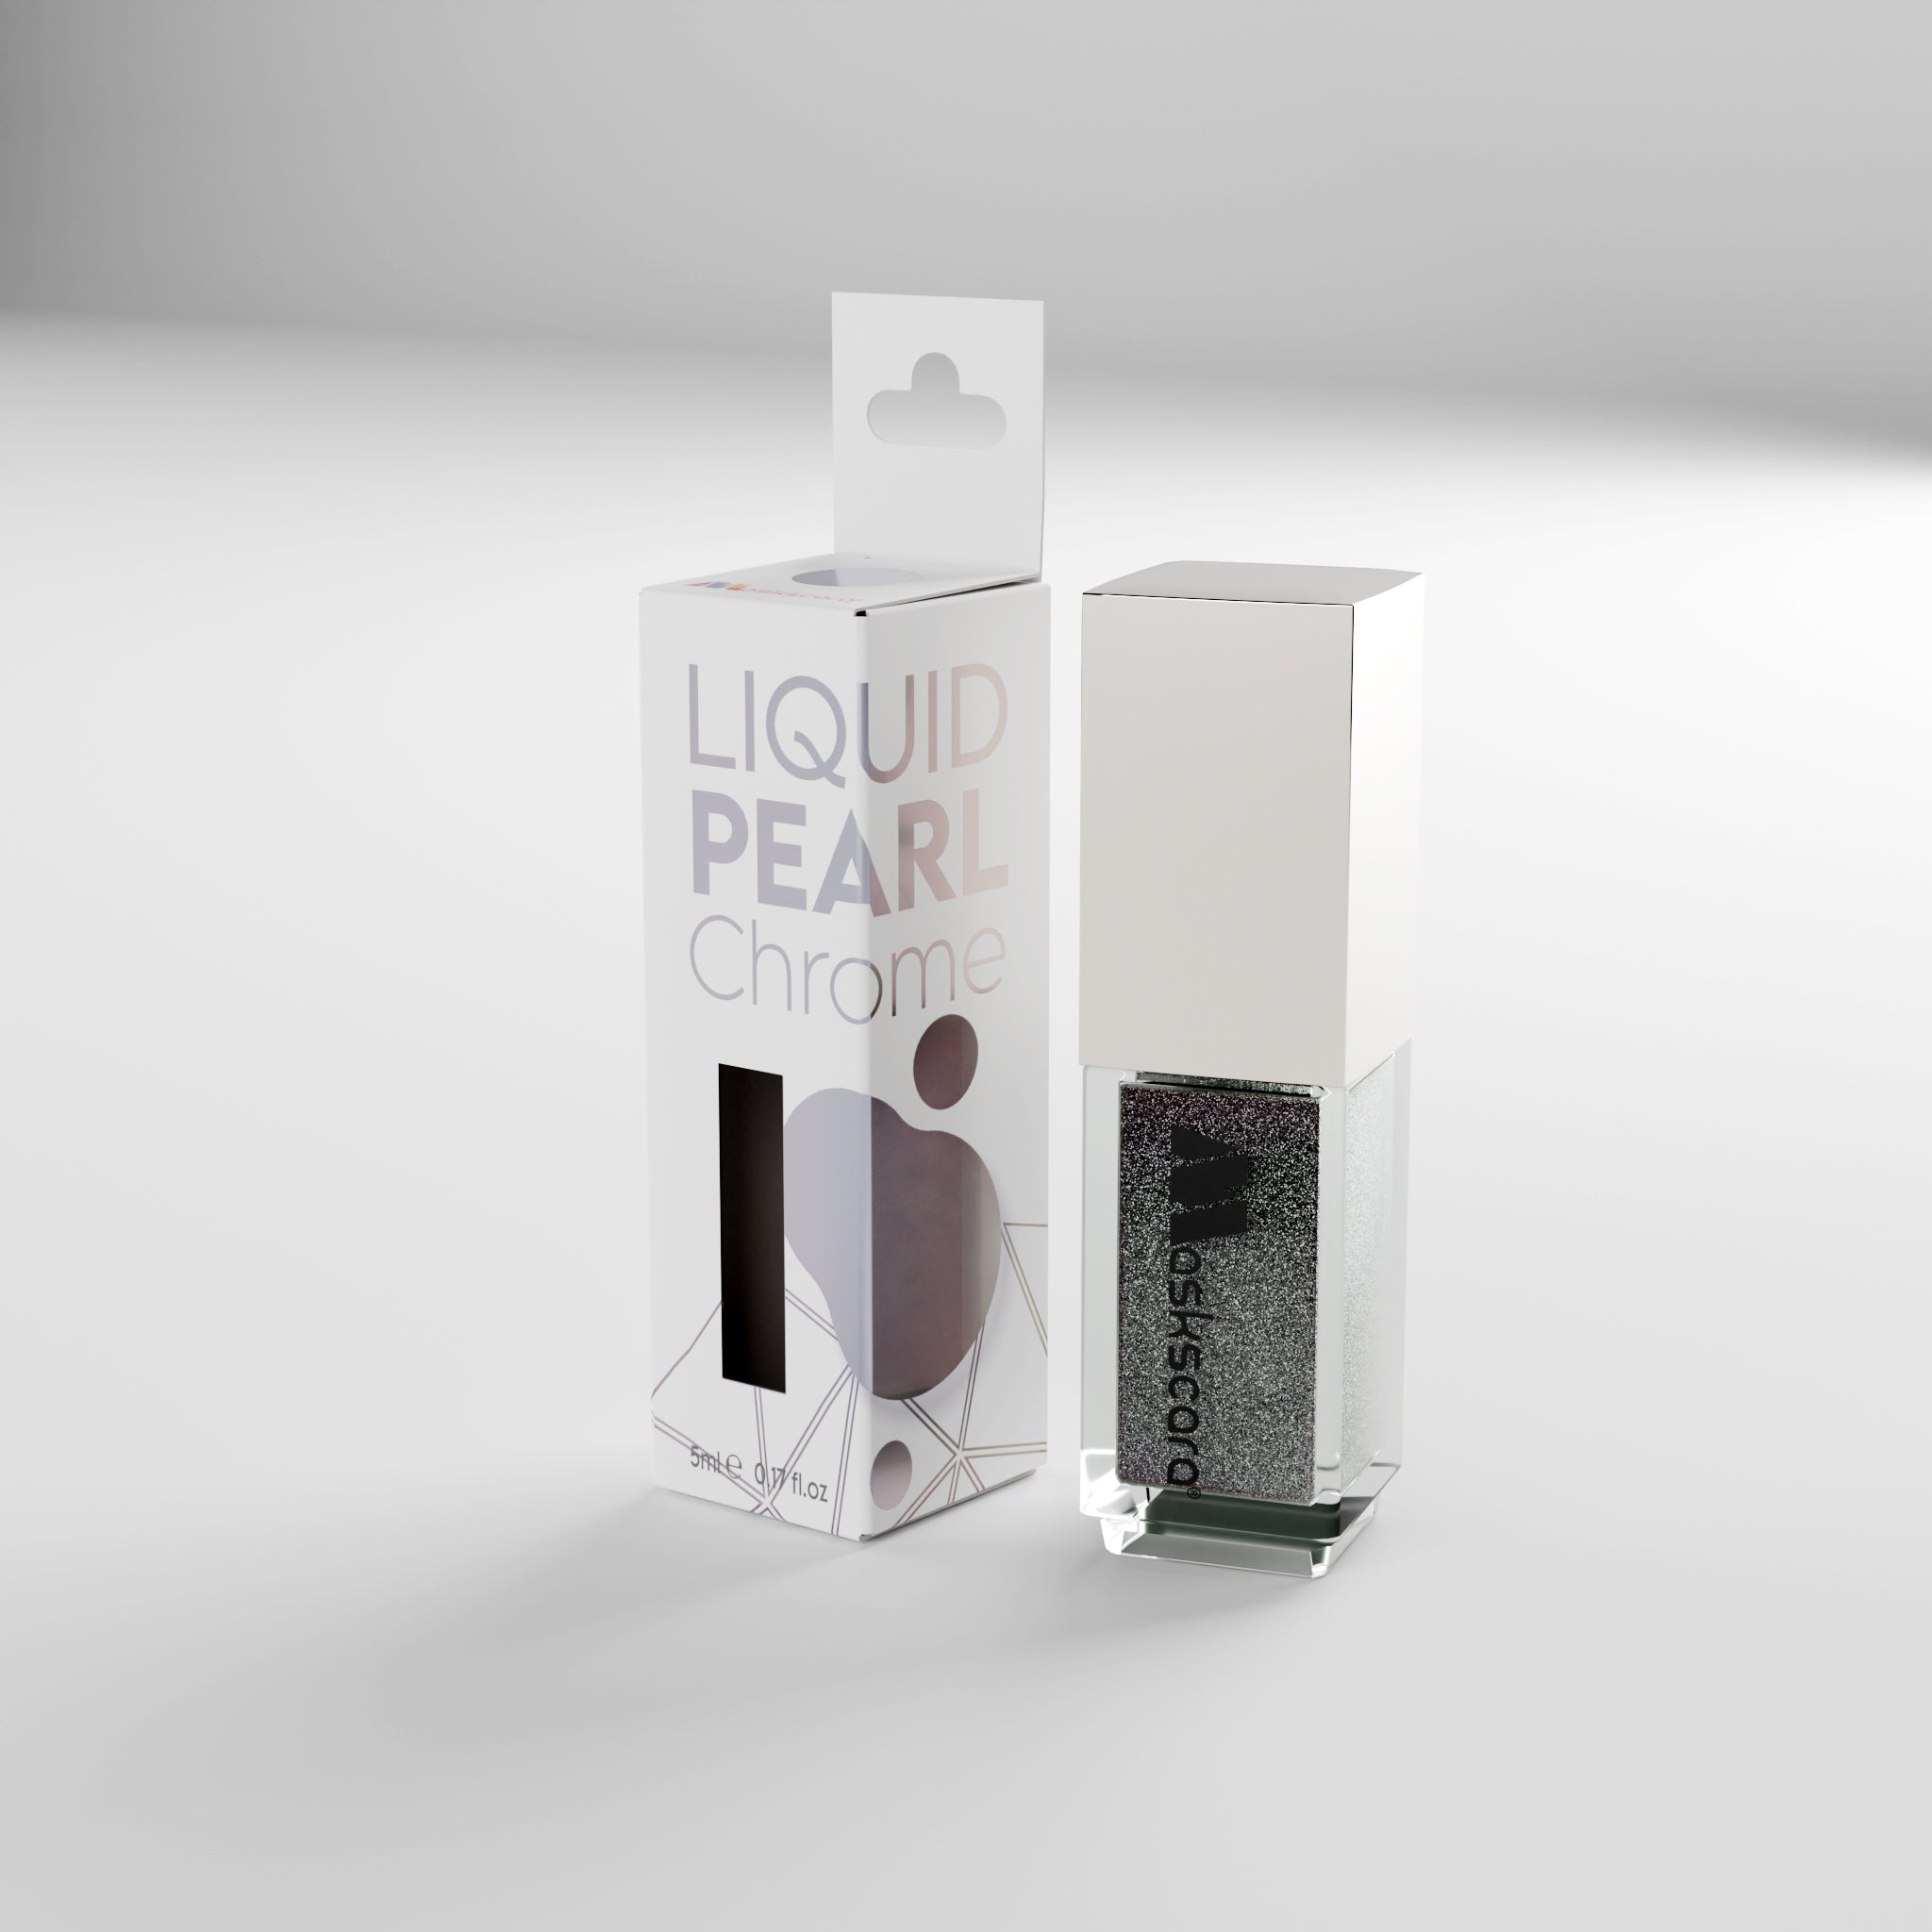 Liquid Pearl Chrome